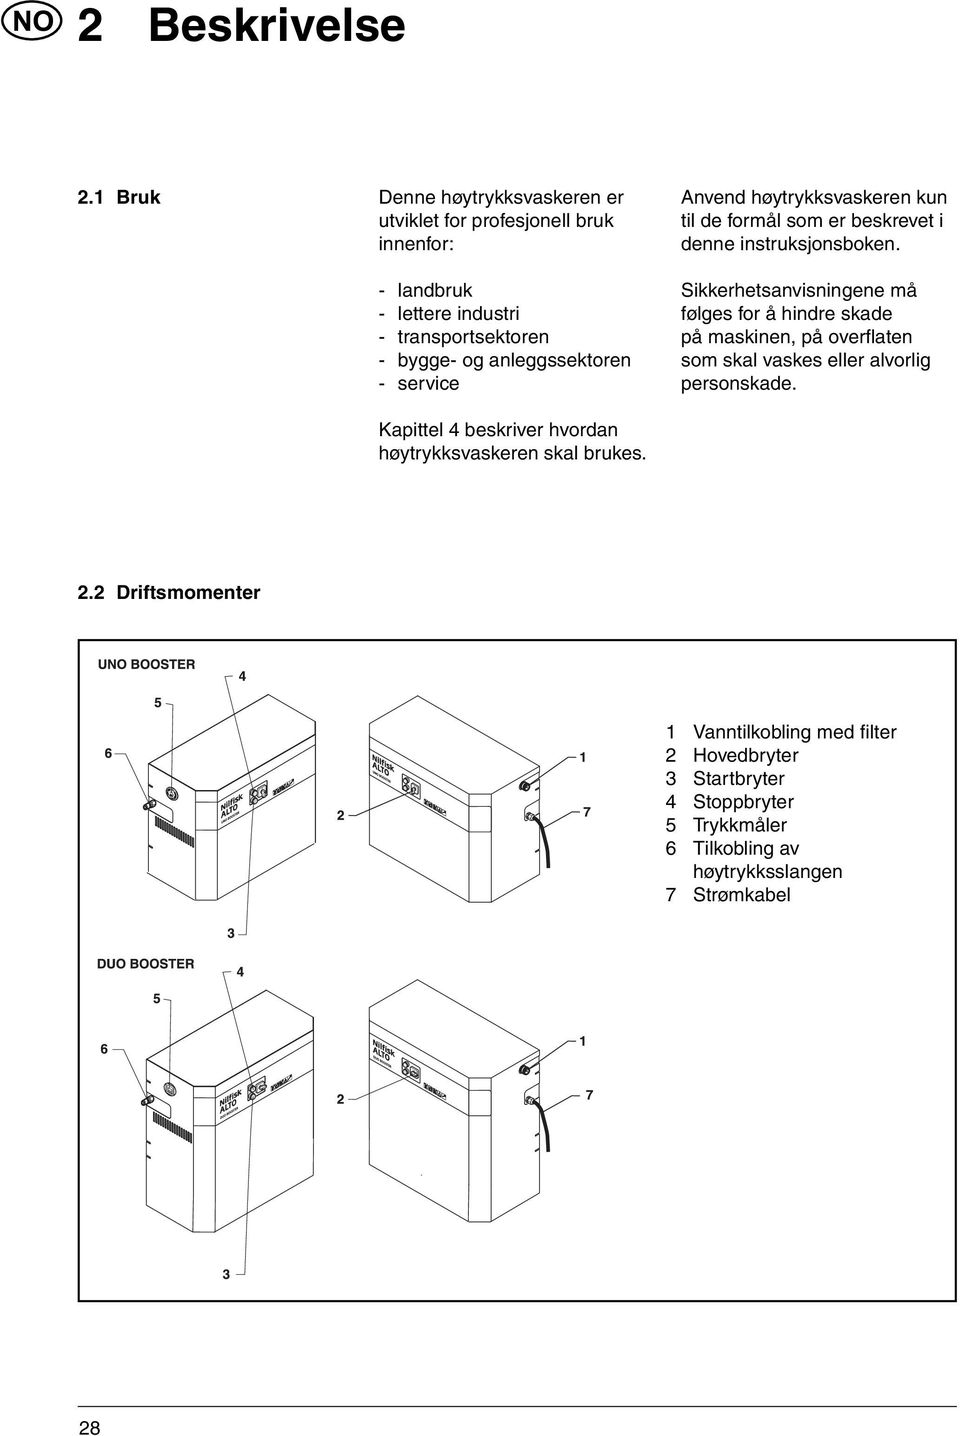 anleggssektoren - service Anvend høytrykksvaskeren kun til de formål som er beskrevet i denne instruksjonsboken.